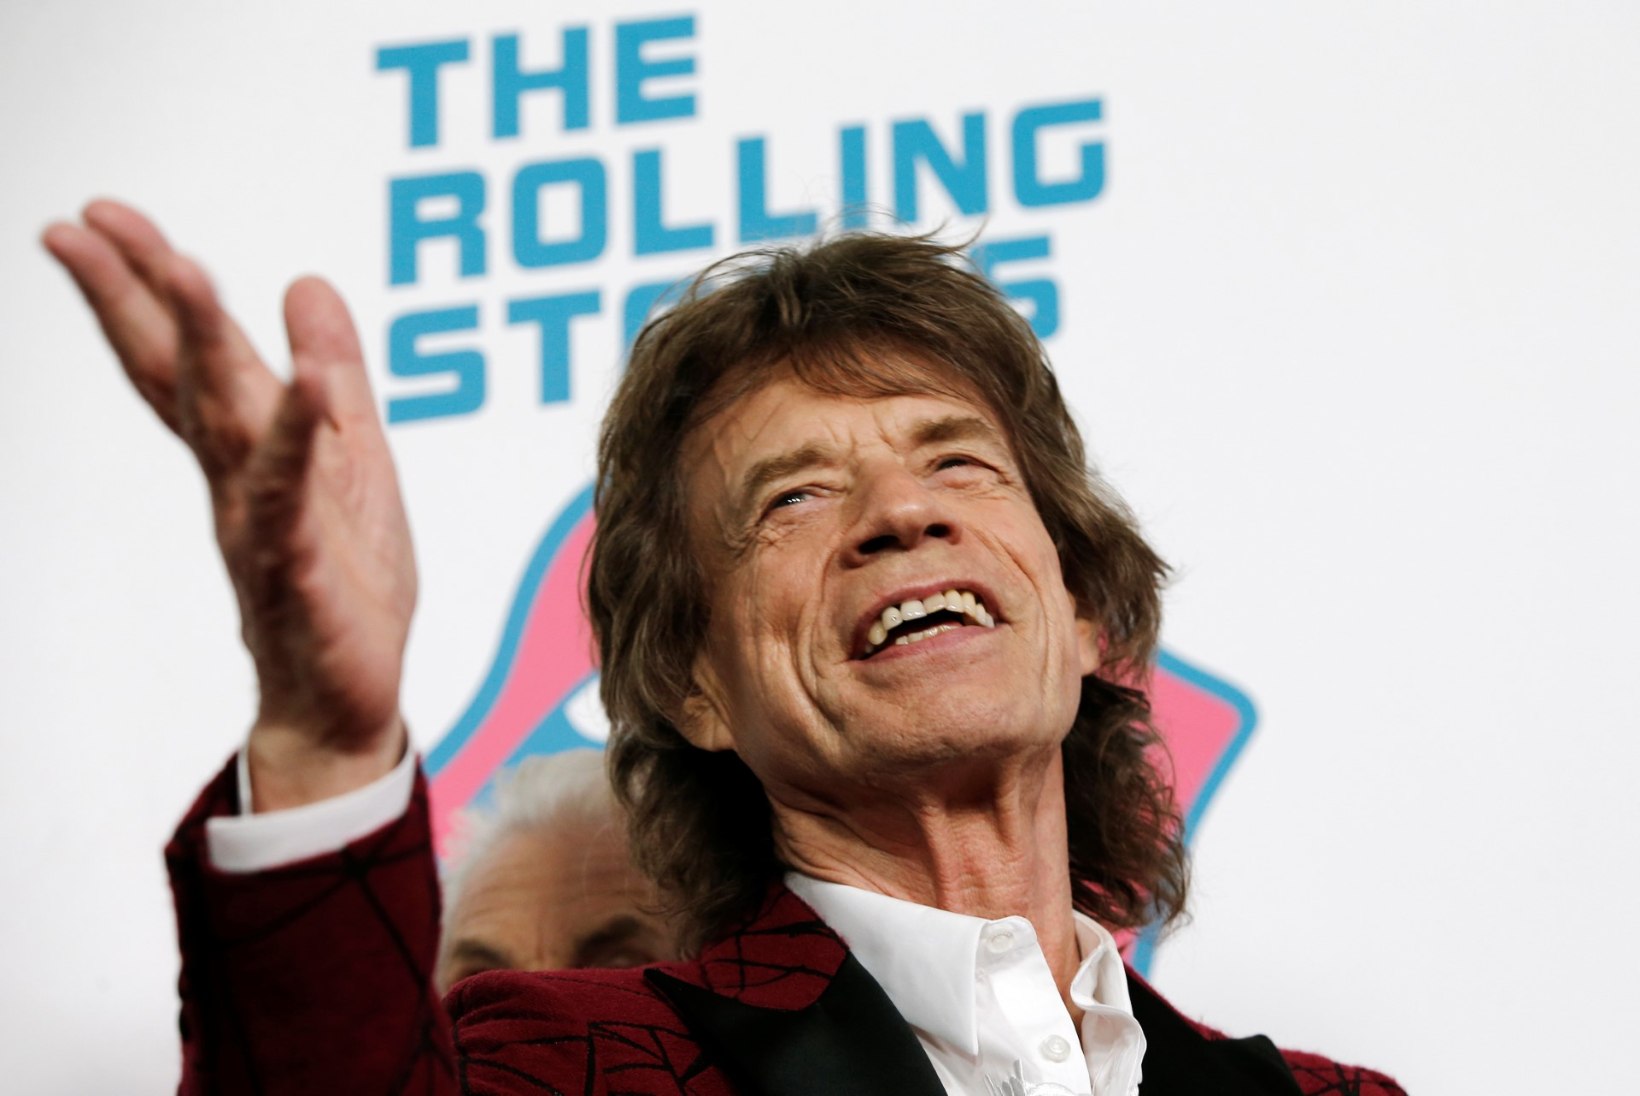 73aastane Mick Jagger sai kaheksanda lapse